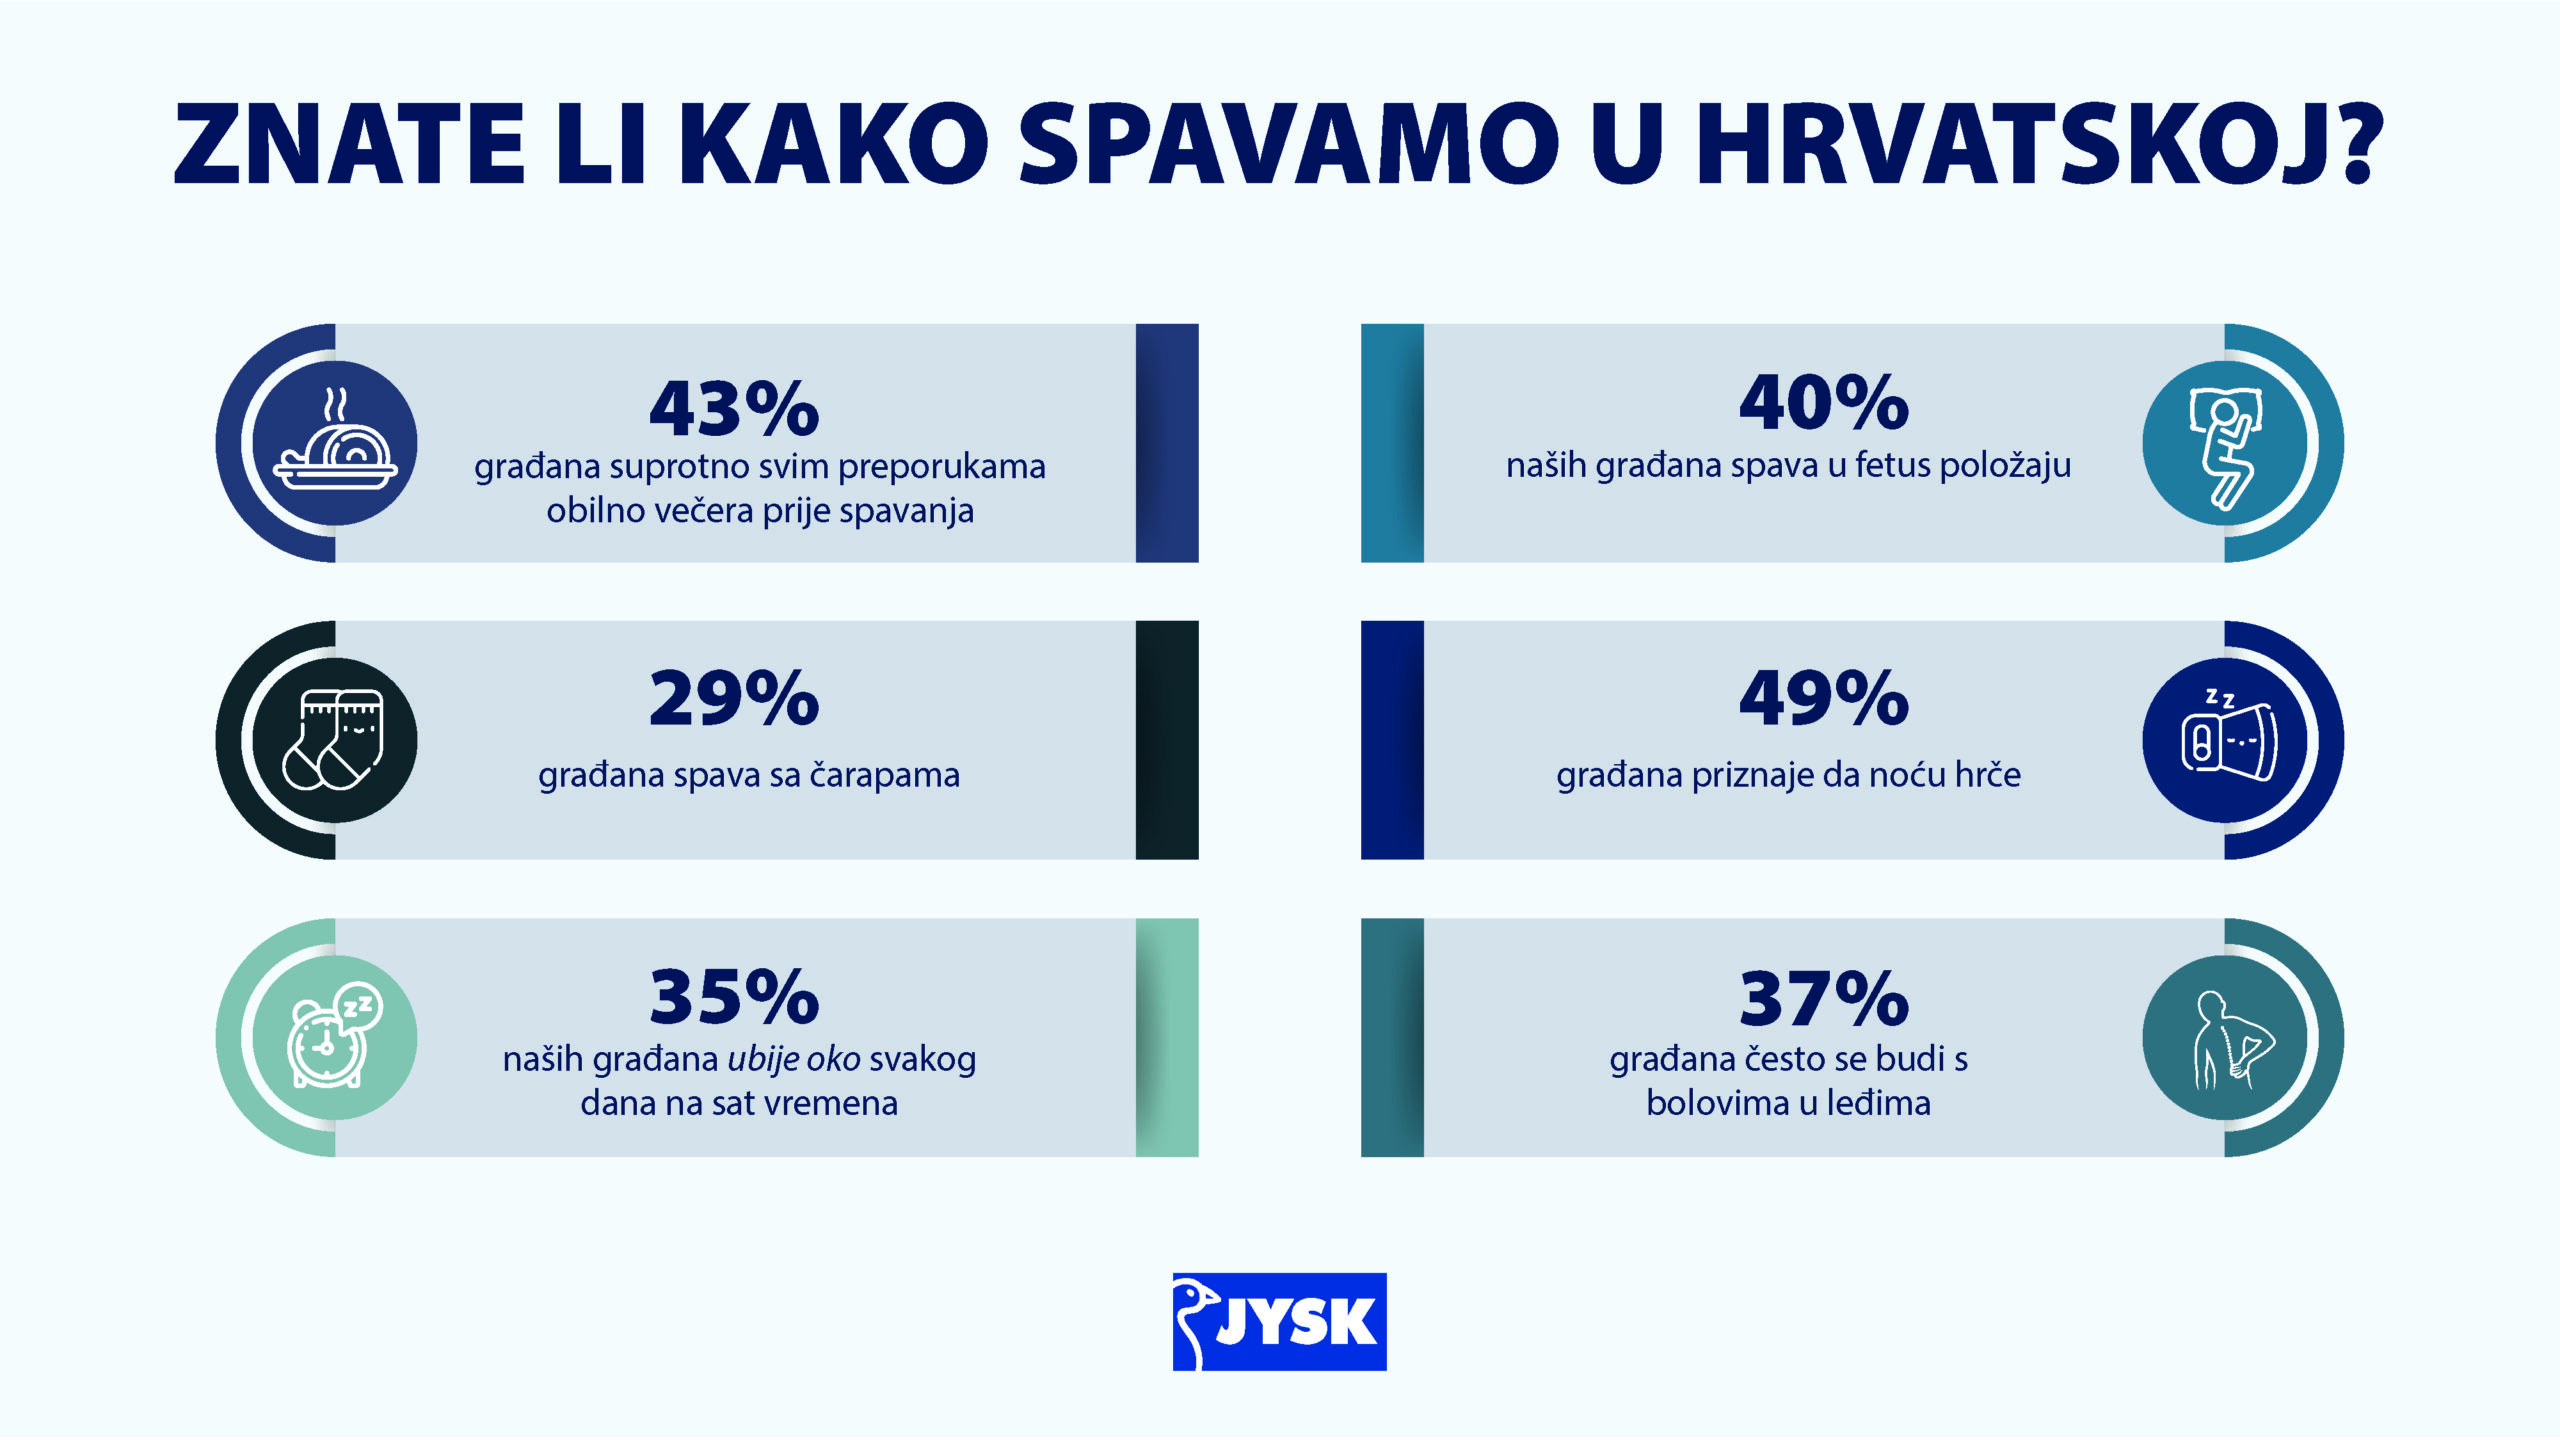 Predstavljeni rezultati istraživanja o navikama spavanja Hrvata